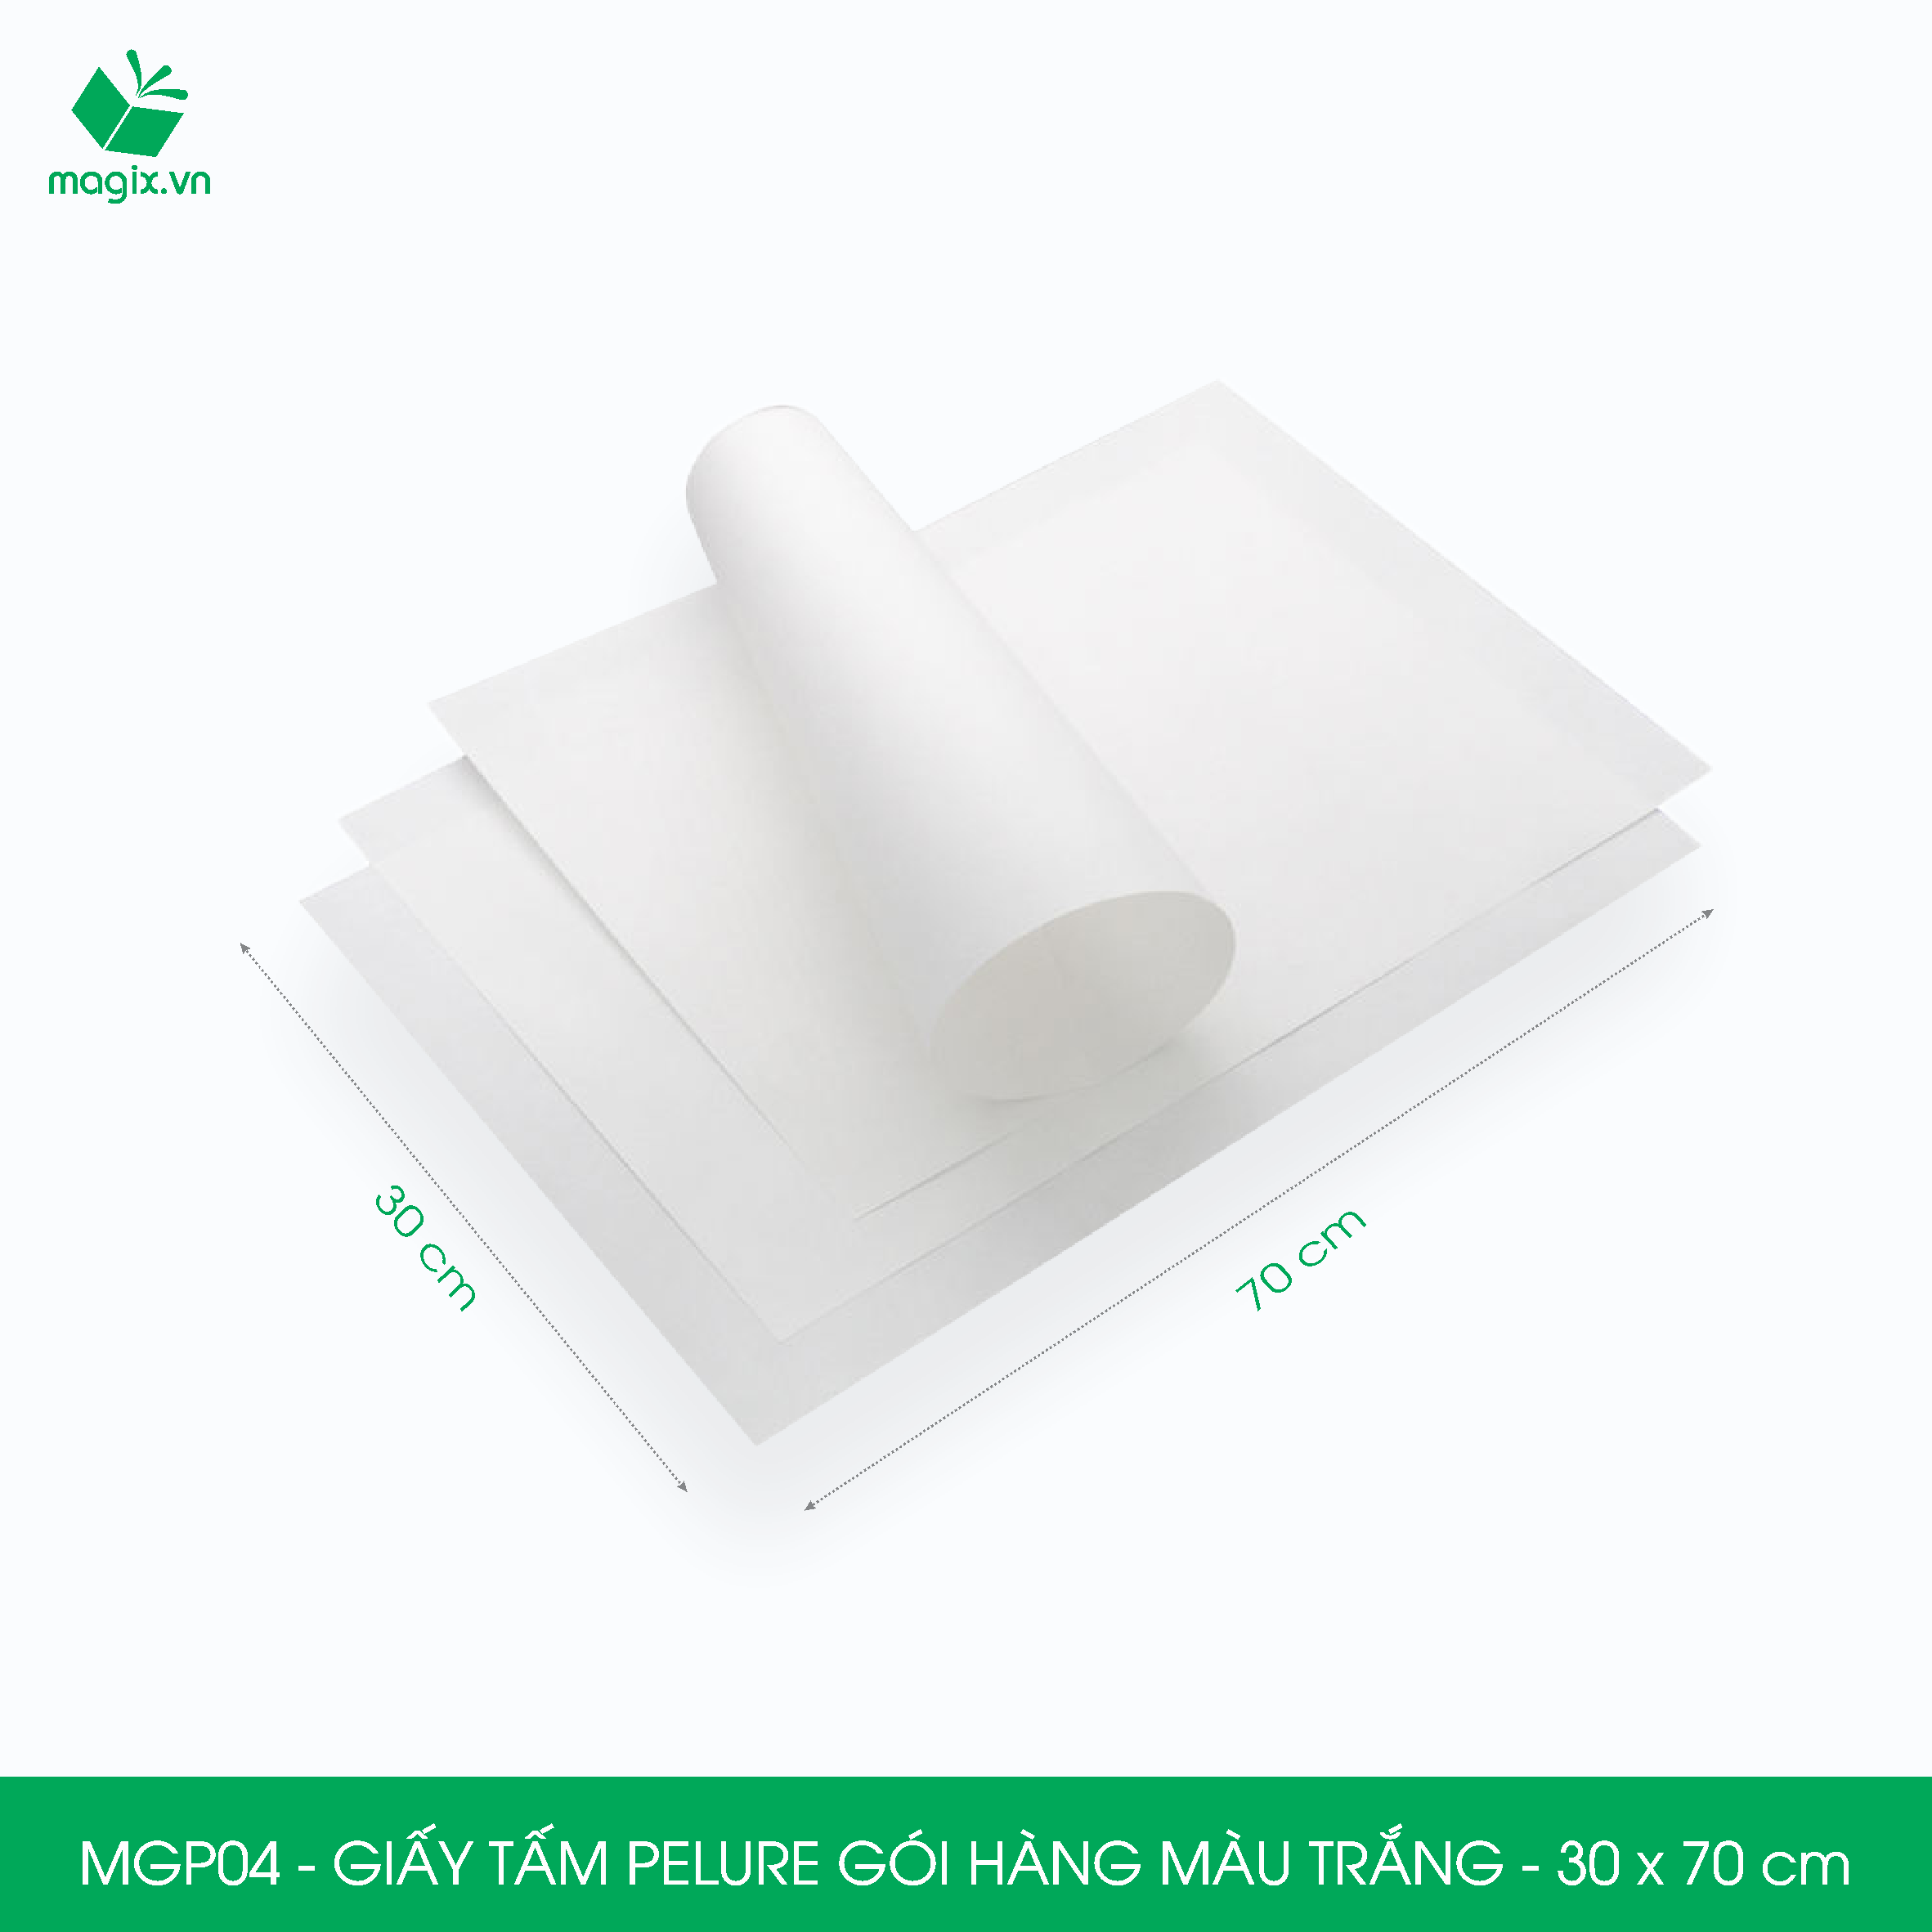 MGP04 - 30x70 cm - 500 tấm giấy Pelure trắng gói hàng, giấy chống ẩm 2 mặt mịn, giấy bọc hàng thời trang